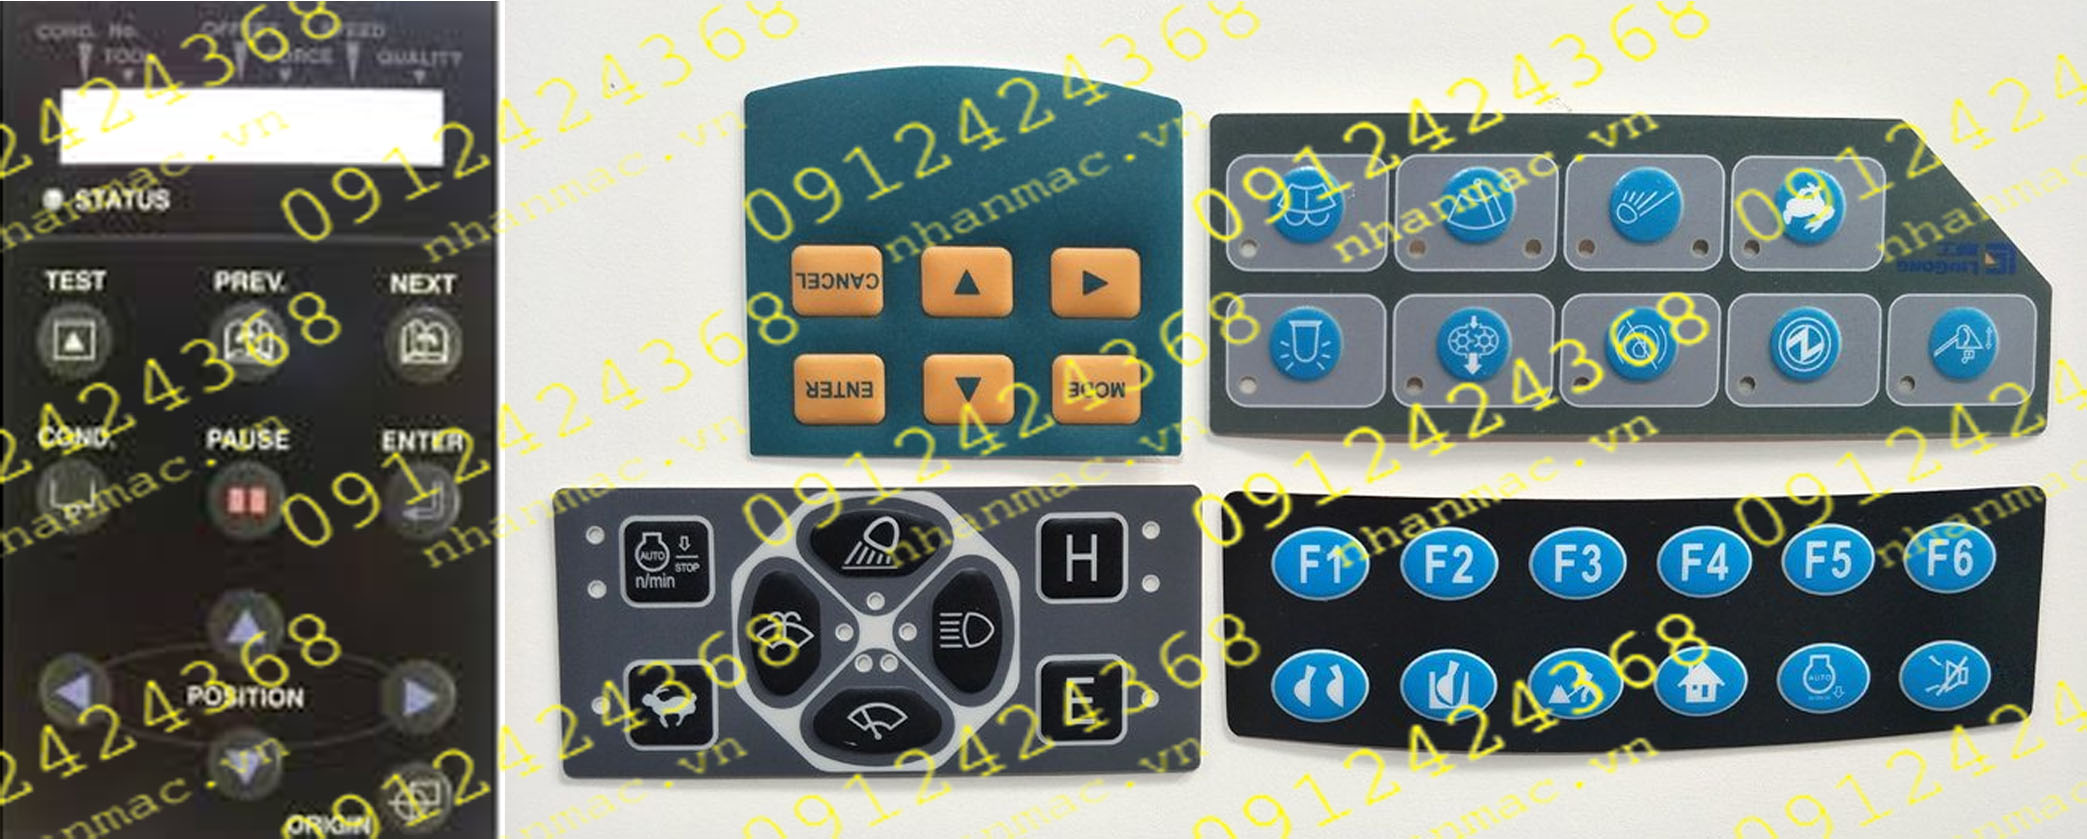 MD9- Miếng dán nhấn nút nổi làm tấm che mặt bàn phím bảng điều khiển được sử dụng làm phím bấm bộ trung tâm điều khiển trong lĩnh vực Máy móc nghành chế biến sơn